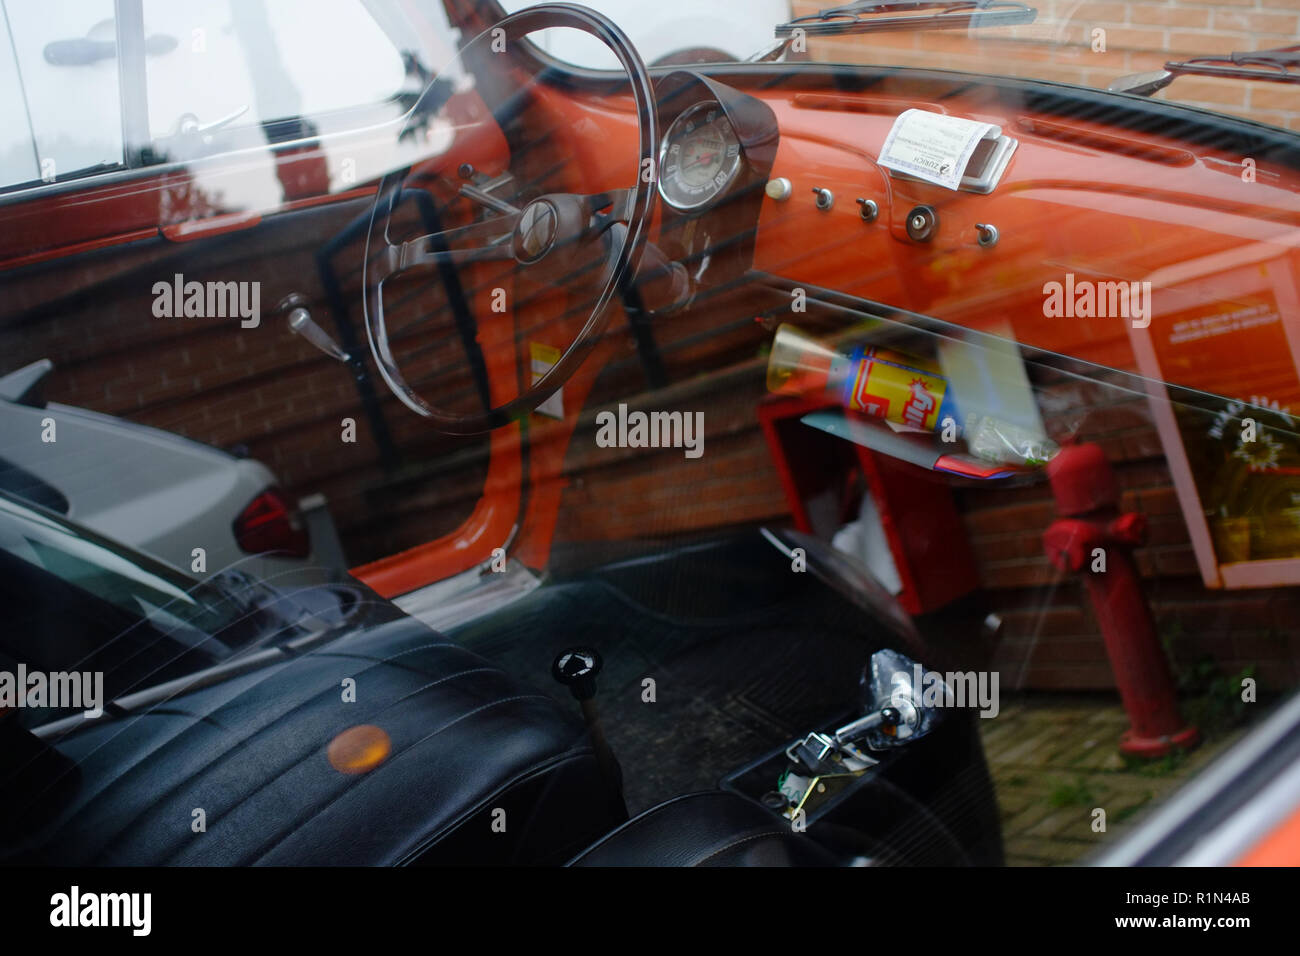 Interior Fiat Car Stockfotos Und Bilder Kaufen Alamy